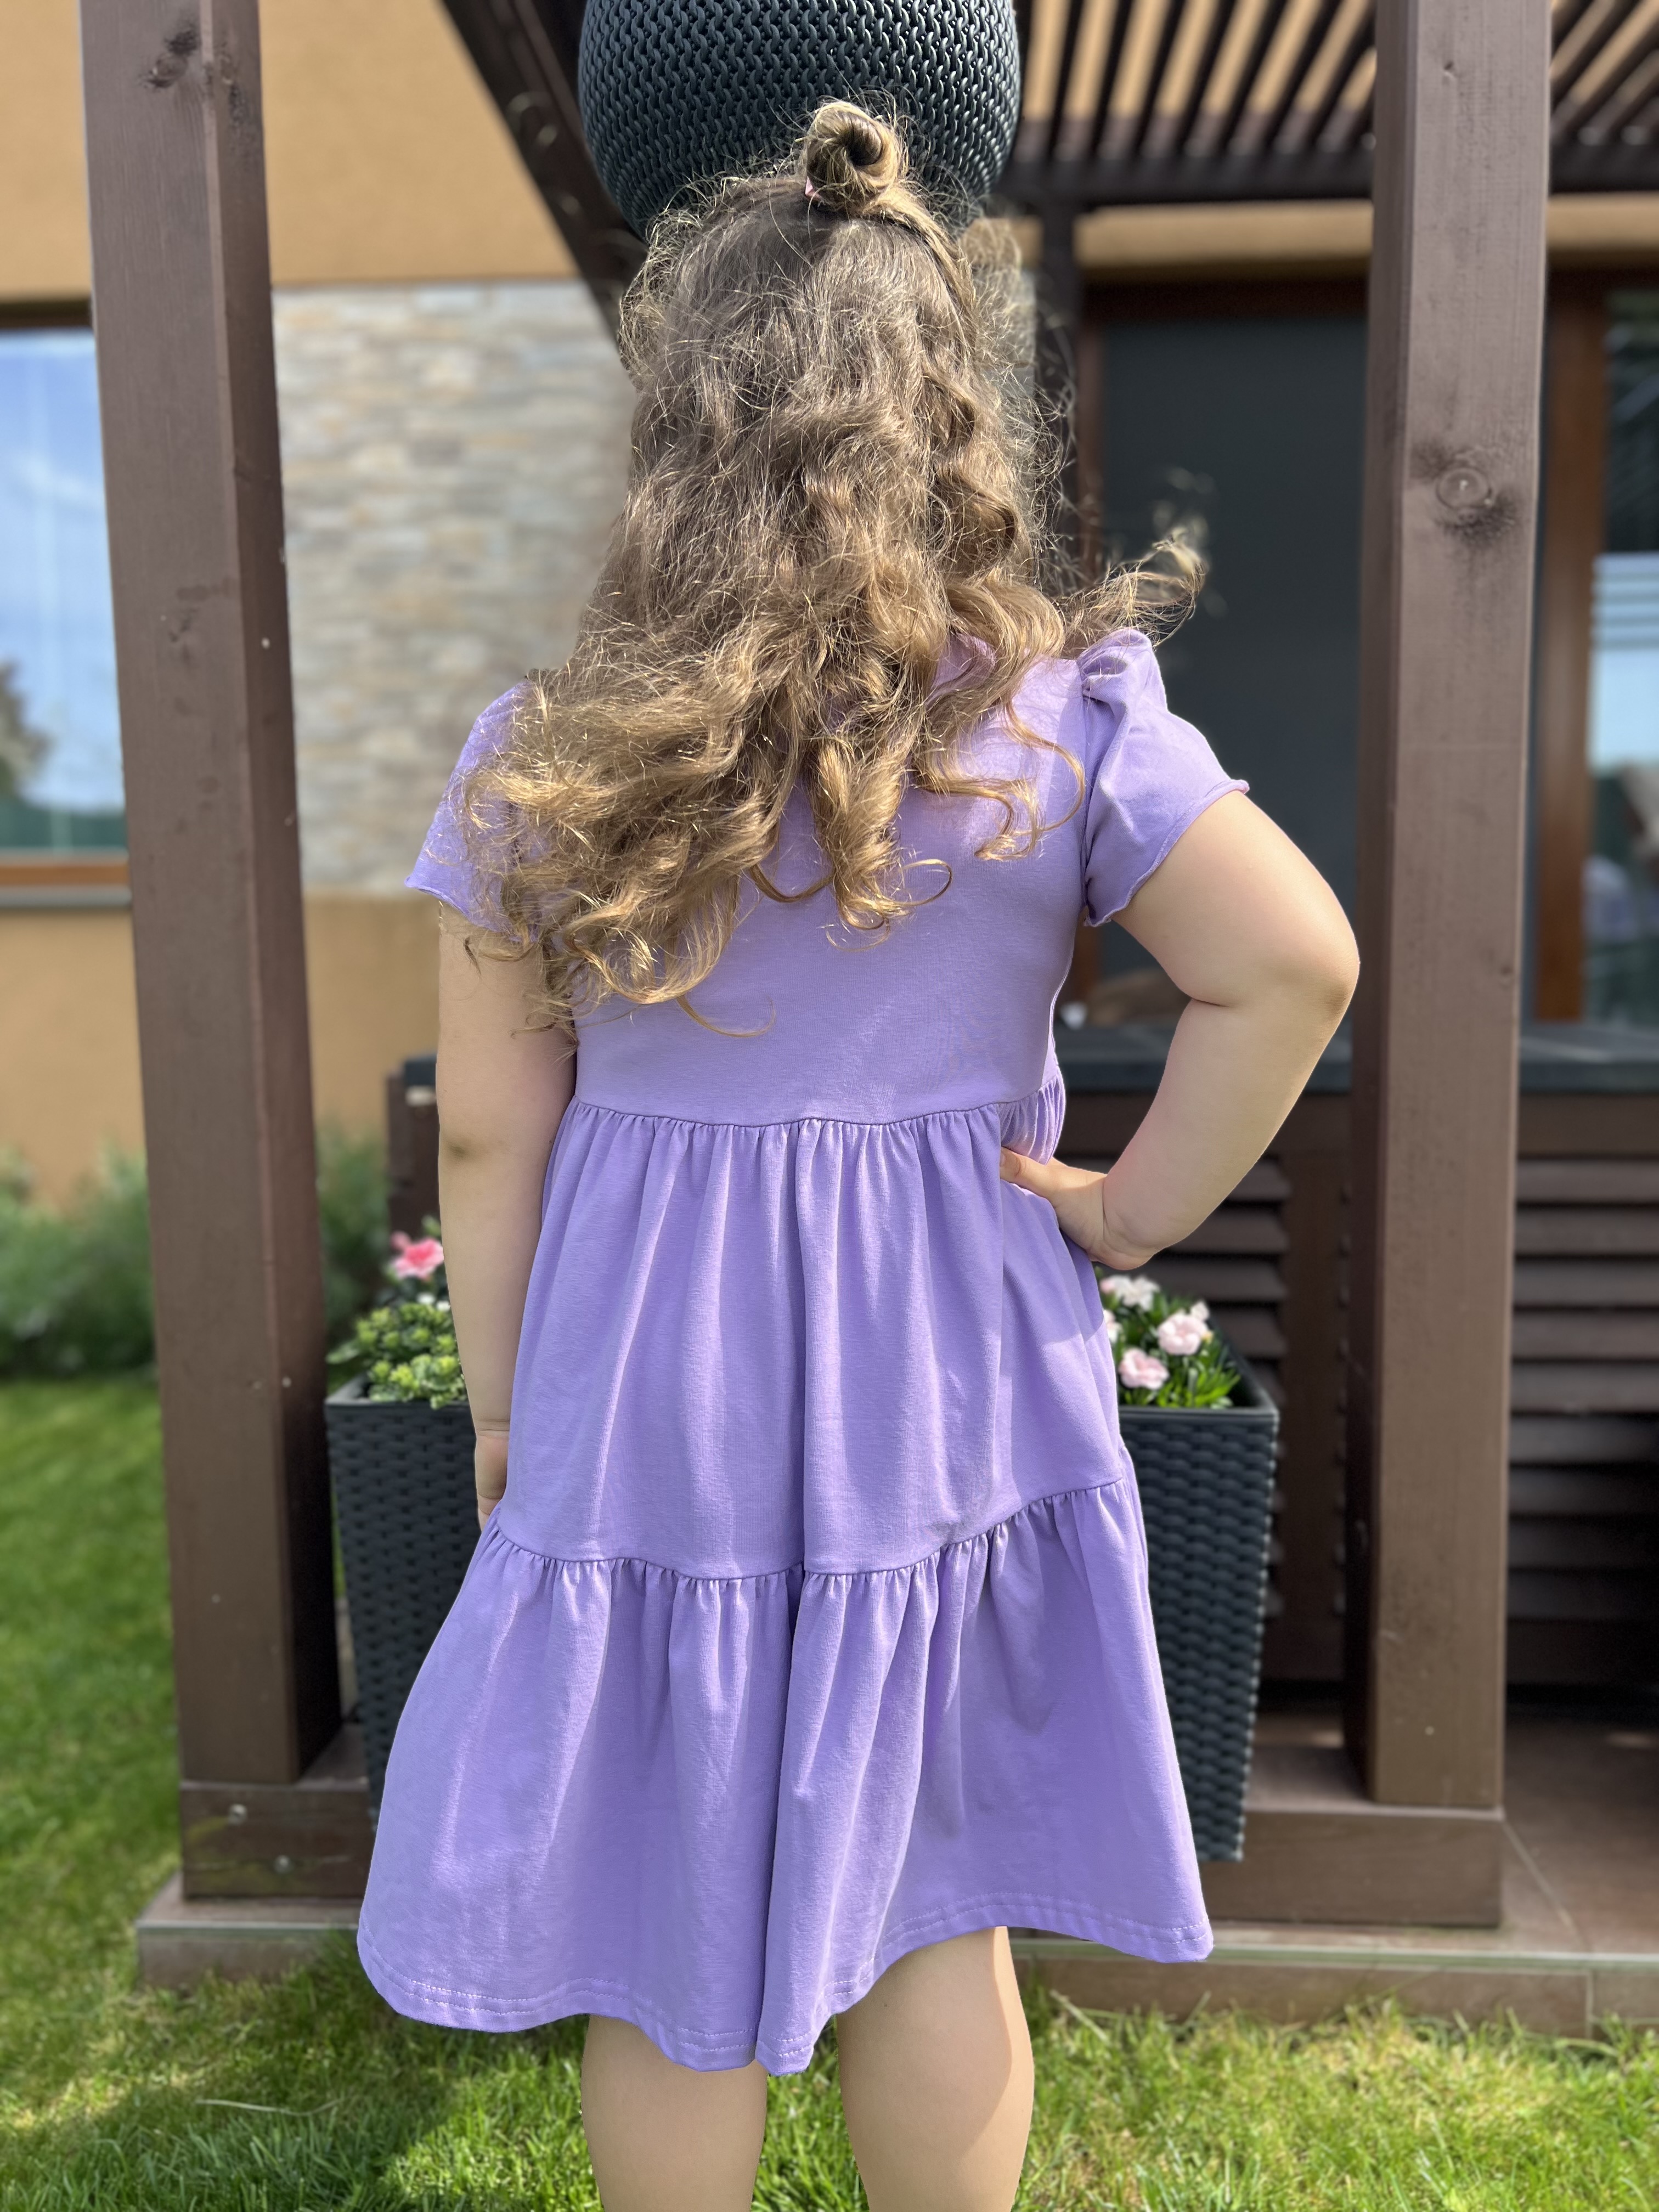 dievčenské bavlnené letné šaty fialové